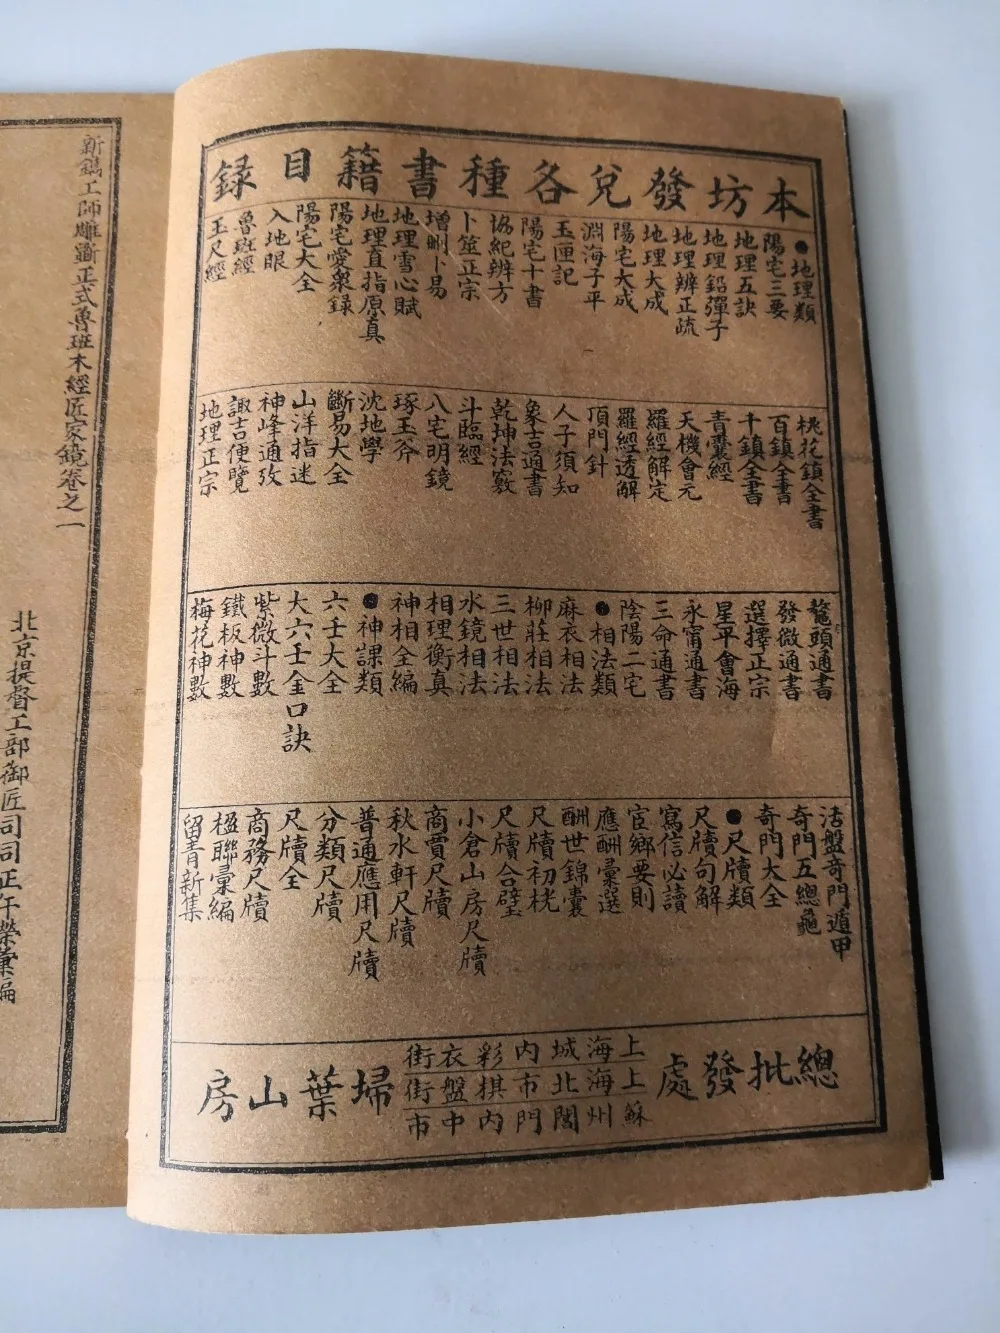 Exquisite Antique Lu Ban Jing Tópico encadernado Livros